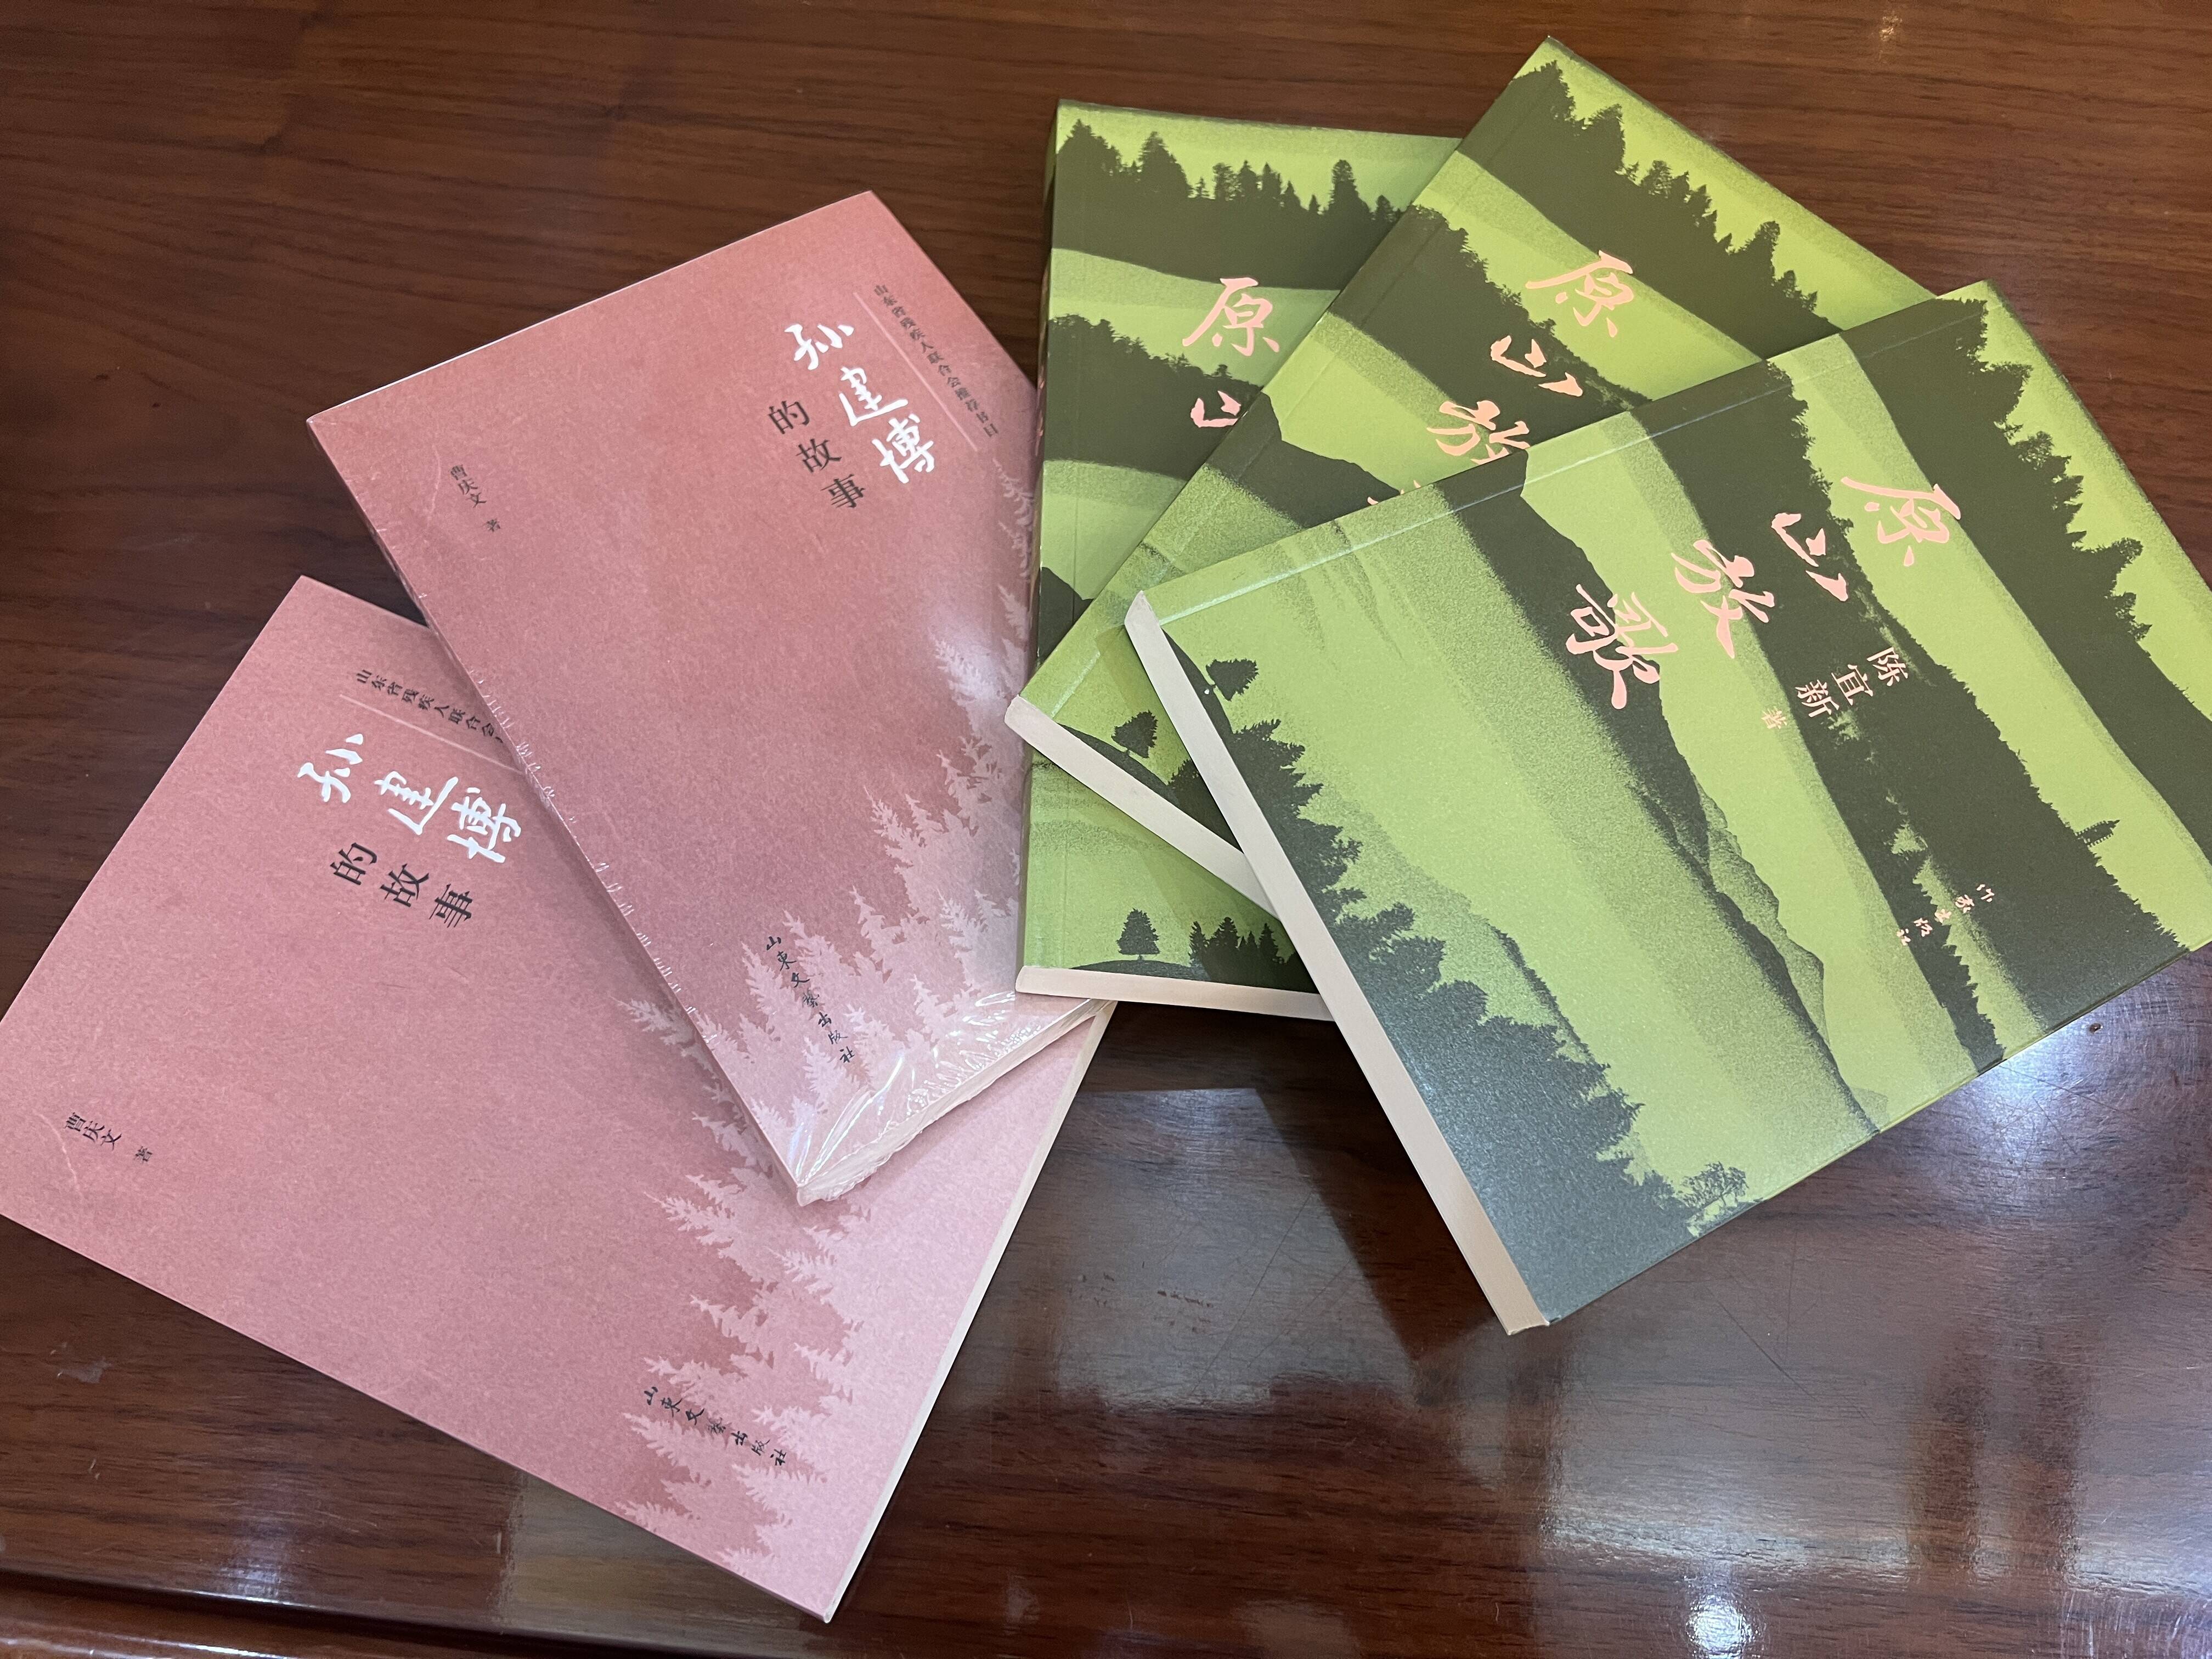 长篇报告文学《原山放歌》和传记文学《孙建博的故事》在济南首发